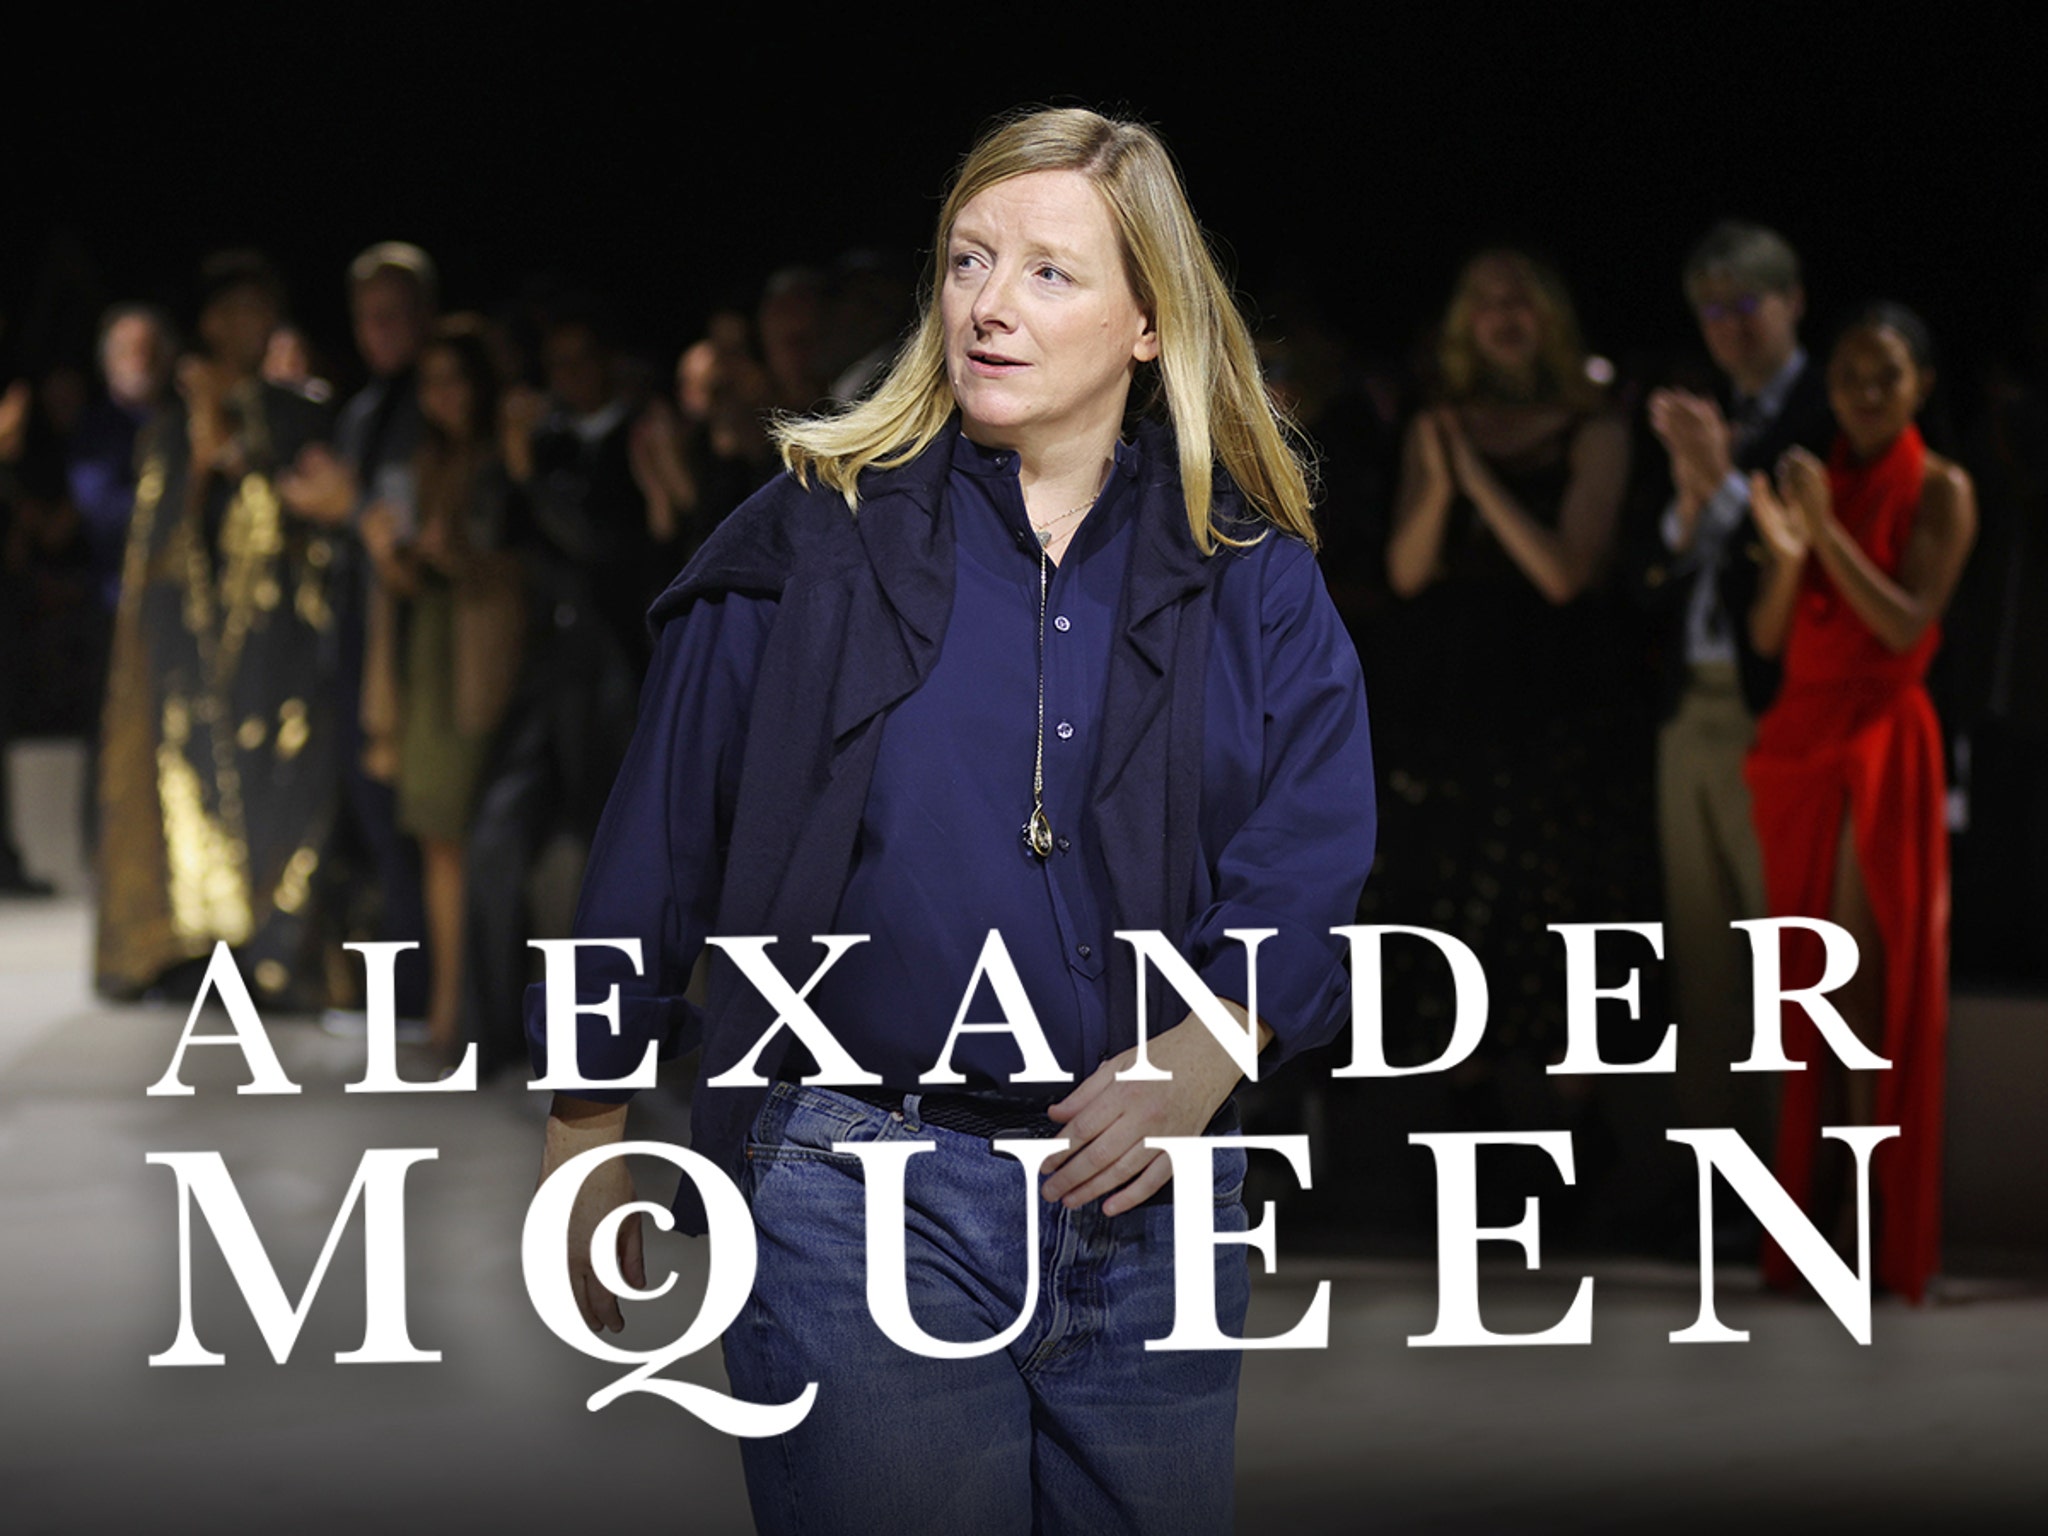 The Final Days of Alexander McQueen